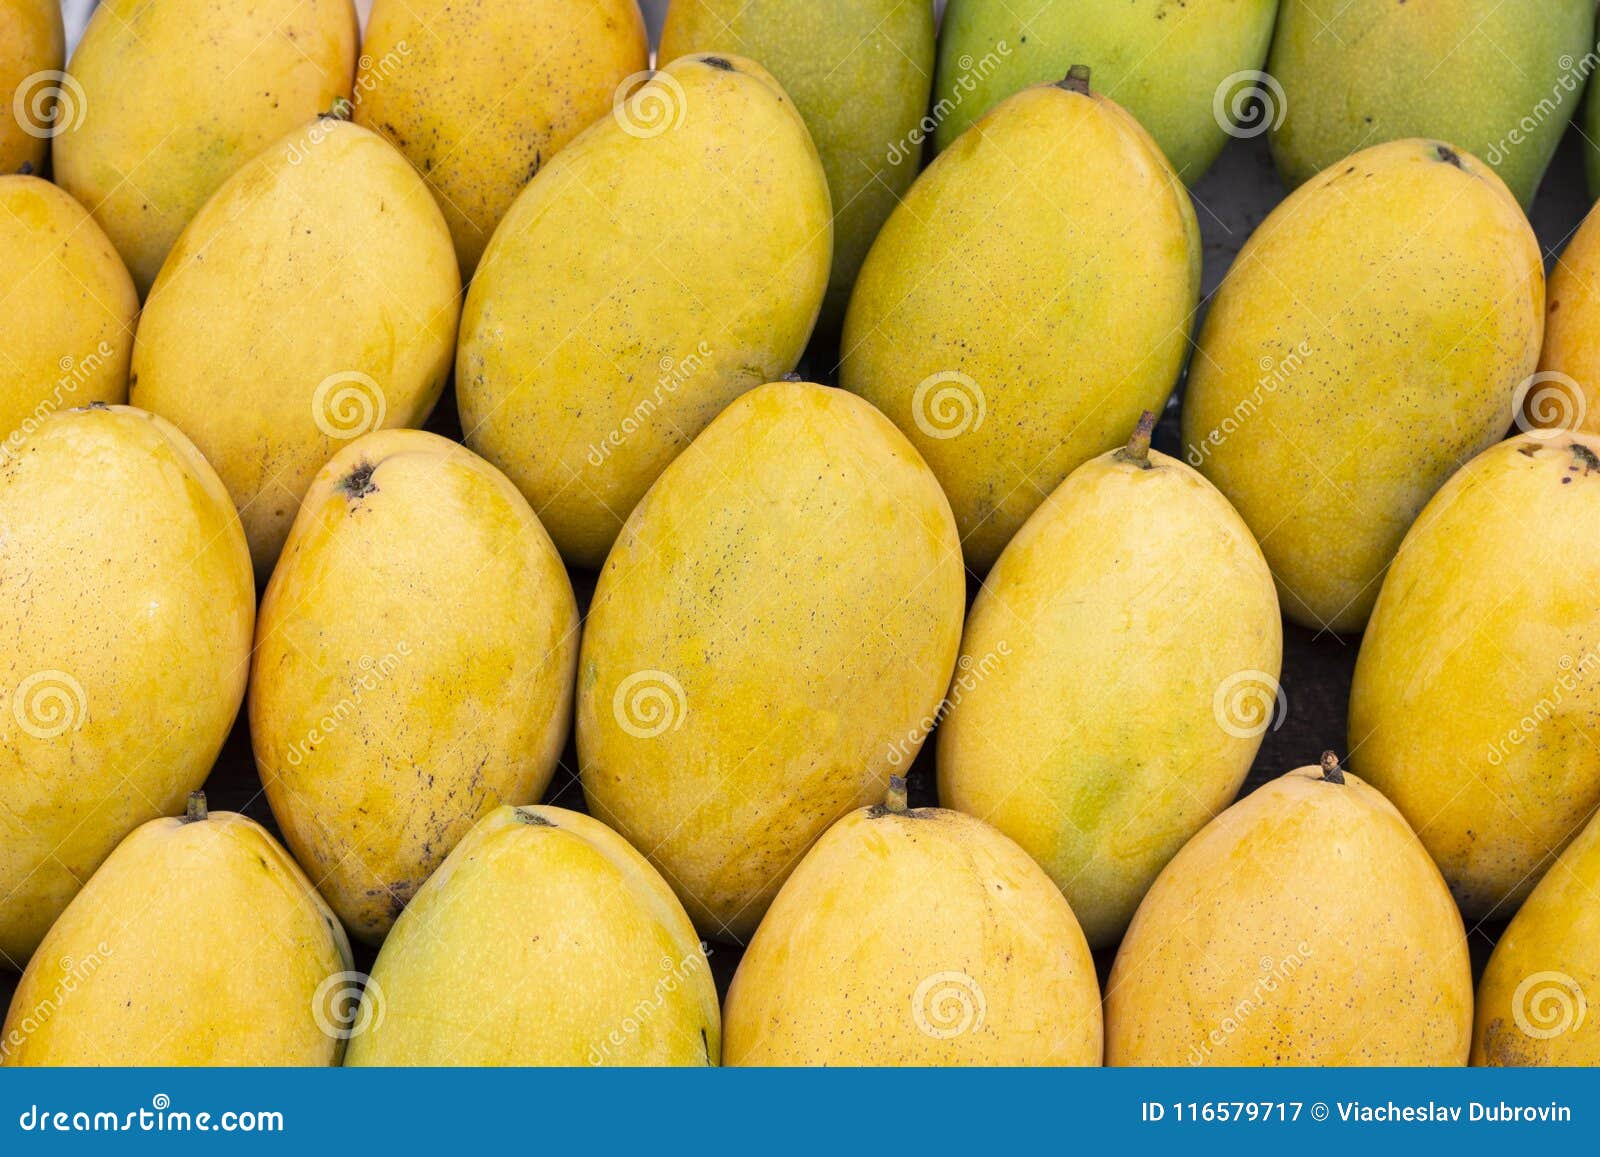 Fondo Amarillo La Foto Del Mango Manojo De Frutas Tropicales Pila Amarilla Oval Del Mango Imagen de archivo - Imagen de objeto, horizontal: 116579717